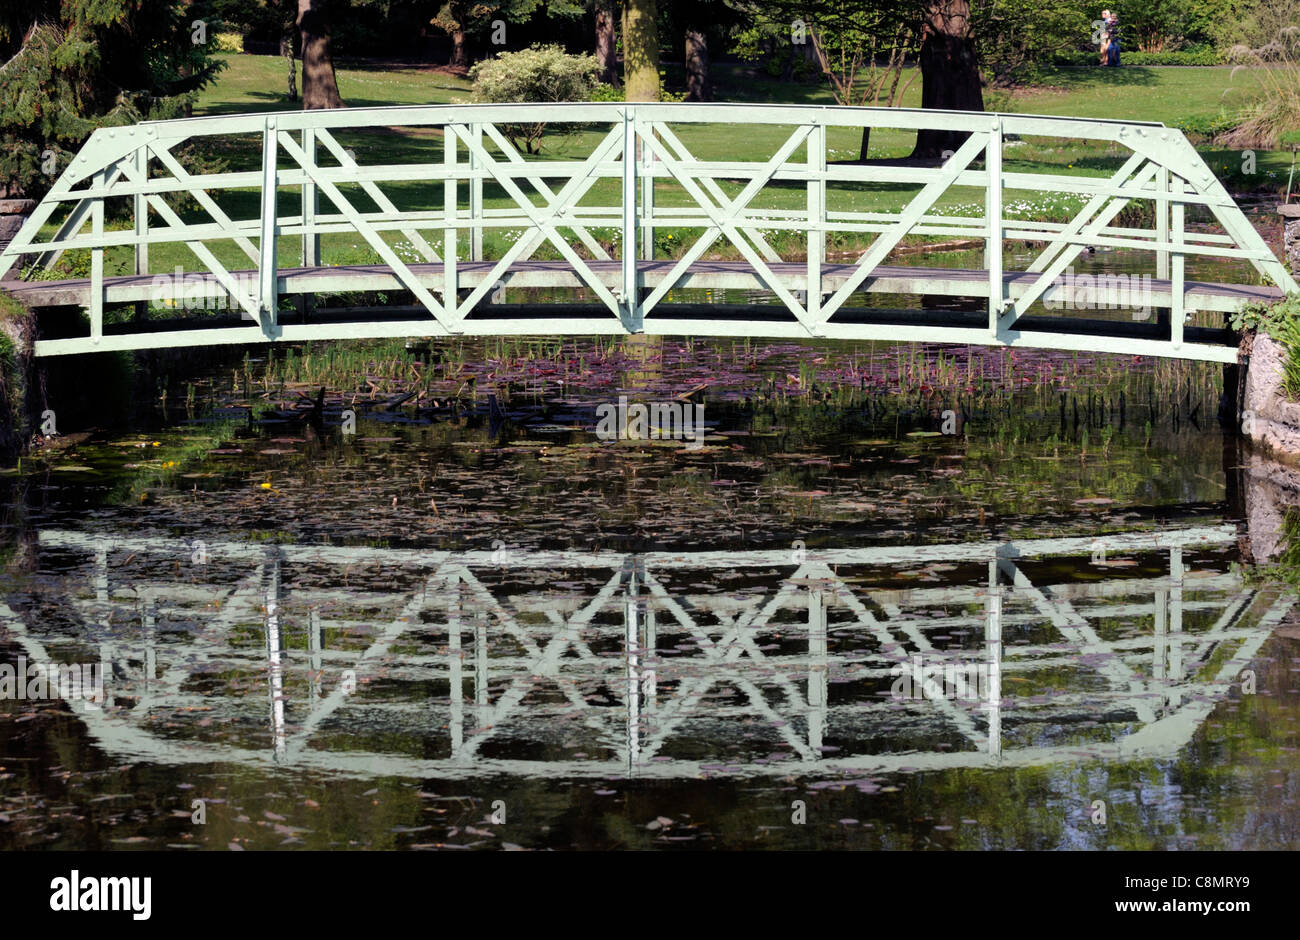 Bianco di ferro battuto singolo span il ponte di arco su un laghetto giardino botanico di Dublino architettura design giardinaggio Foto Stock